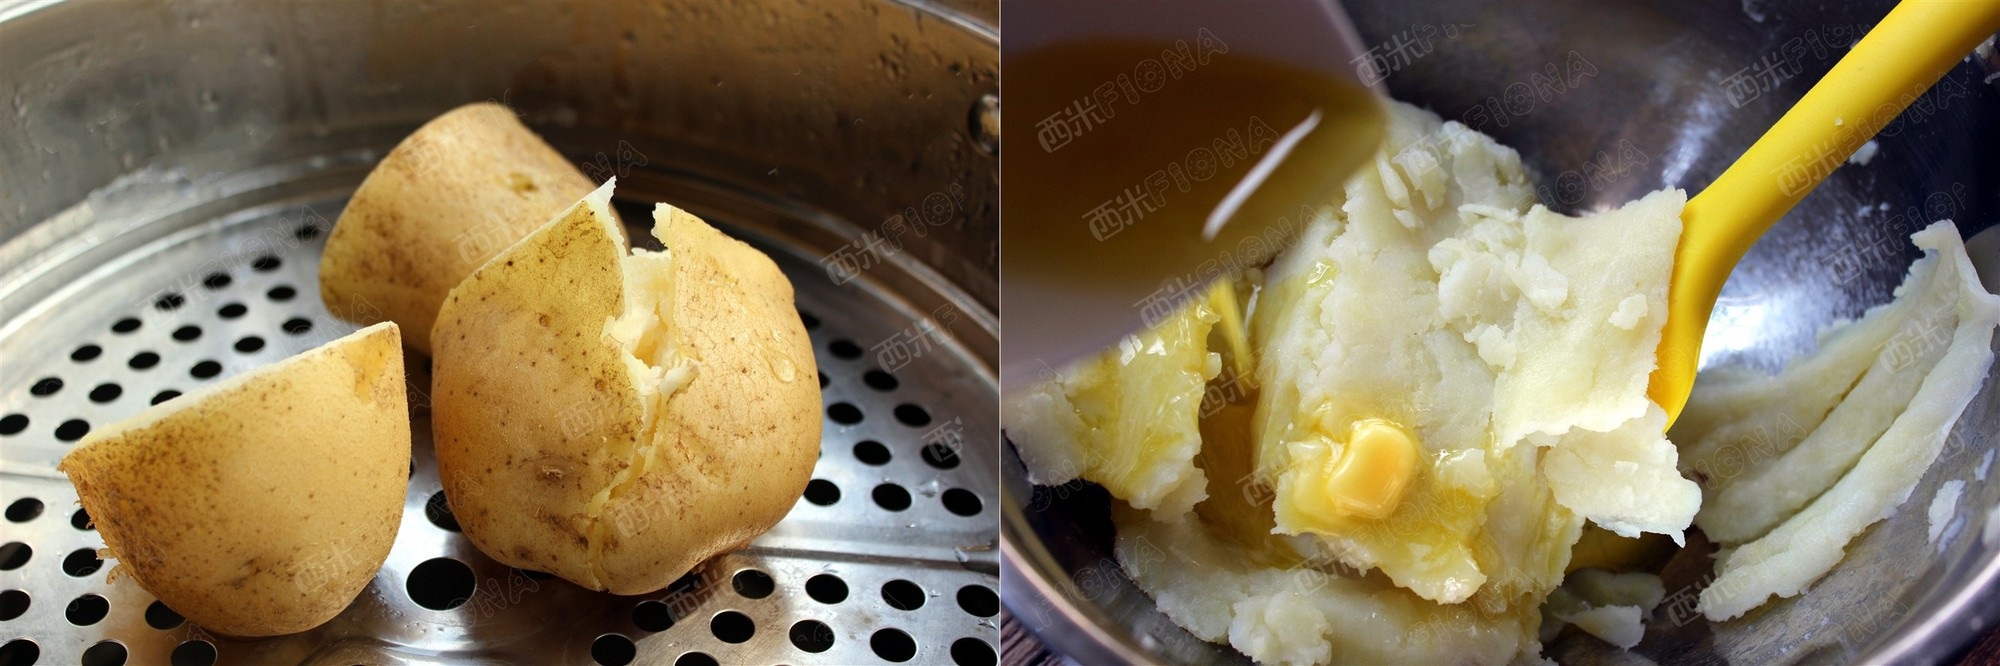 Chẳng cần lò nướng vẫn làm được bánh khoai tây xốp giòn thơm ngon - Ảnh 1